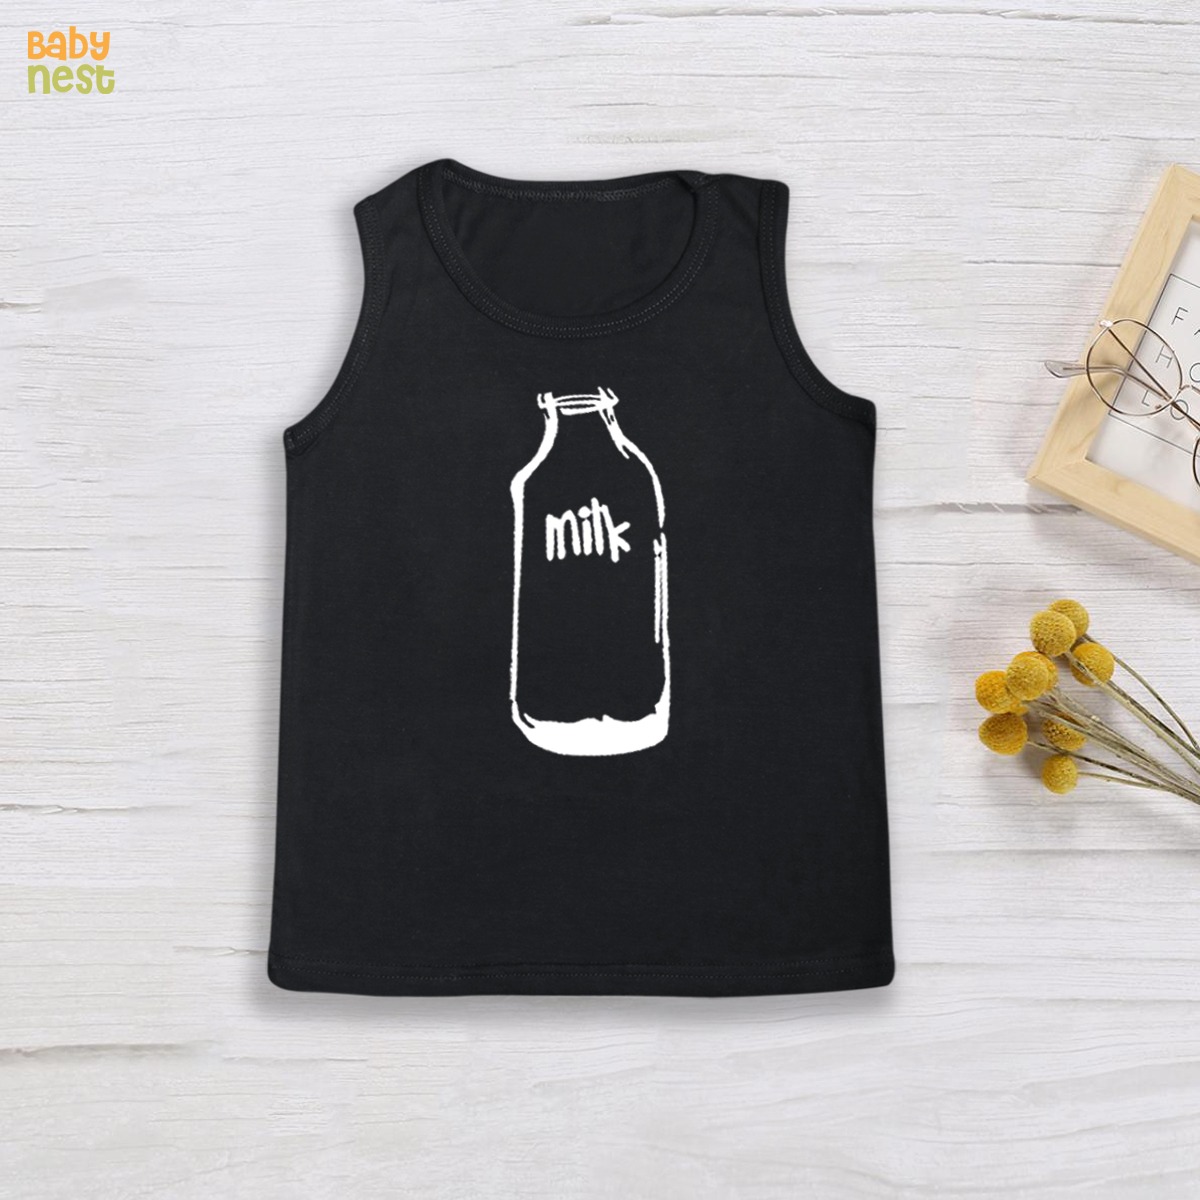 BNBBS-102 – Milk Bottle Print Sandos For Kids – Black